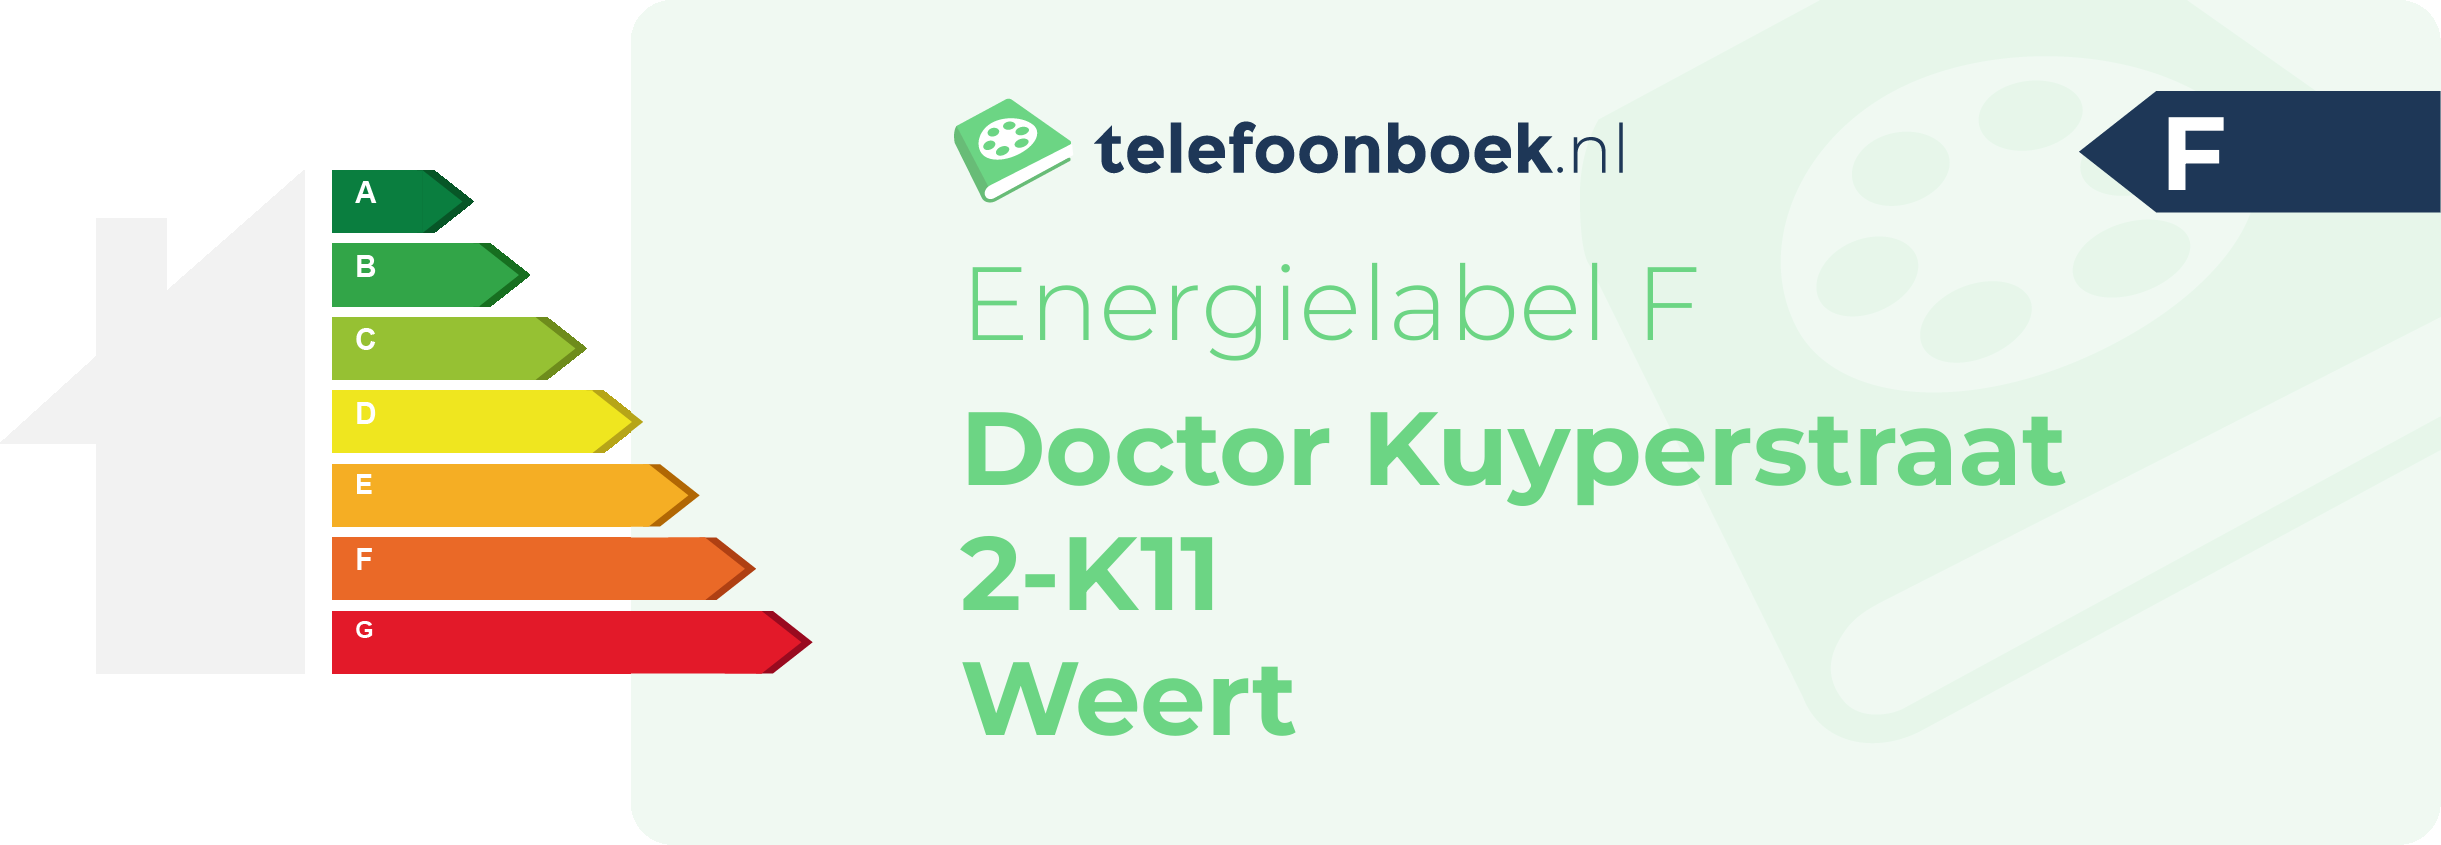 Energielabel Doctor Kuyperstraat 2-K11 Weert